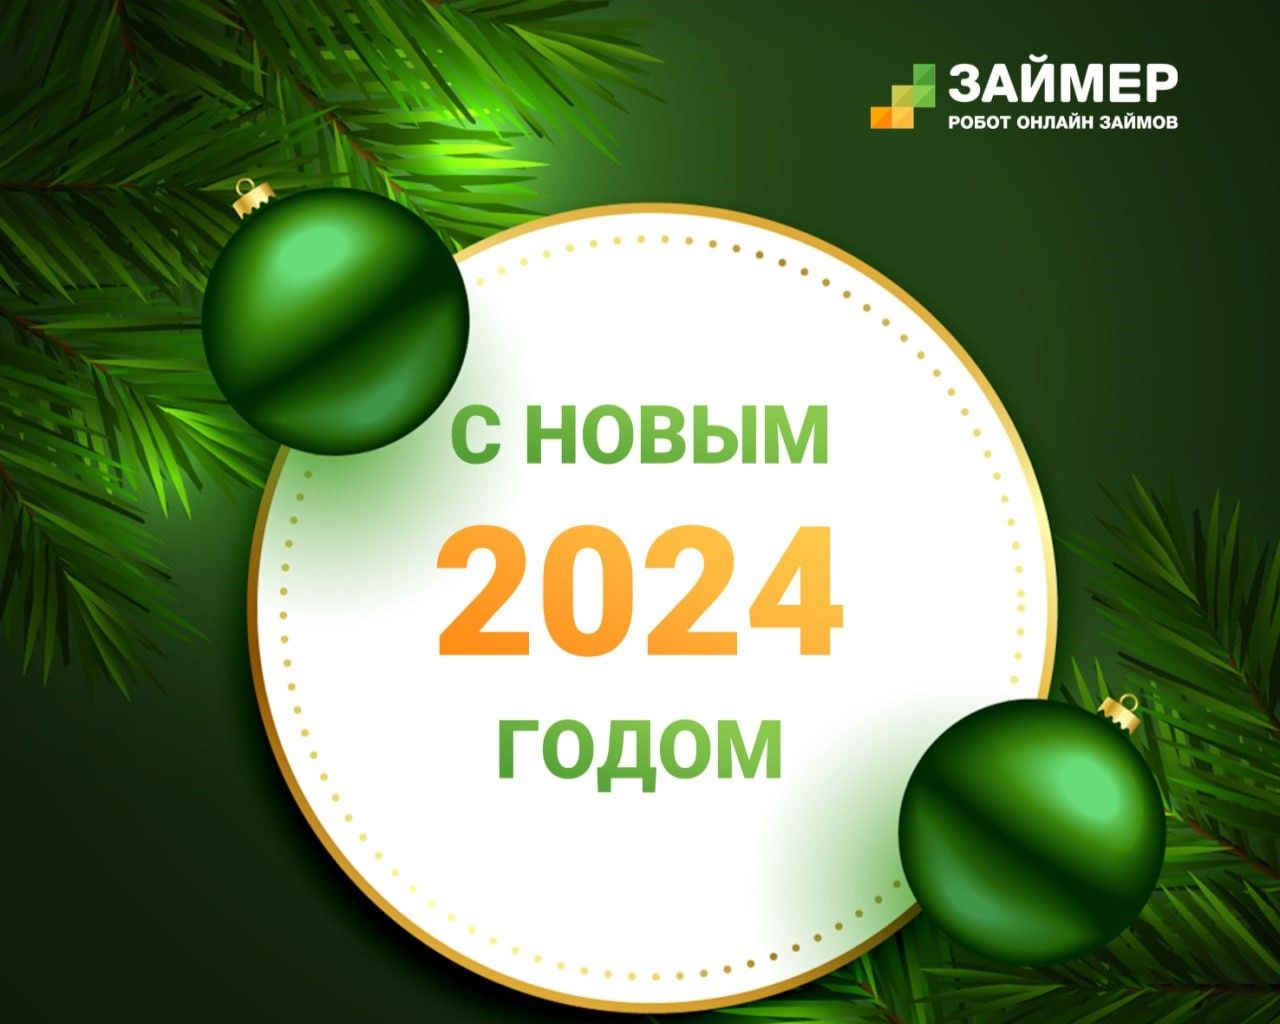 Дорогие друзья, с Новым 2024 годом!